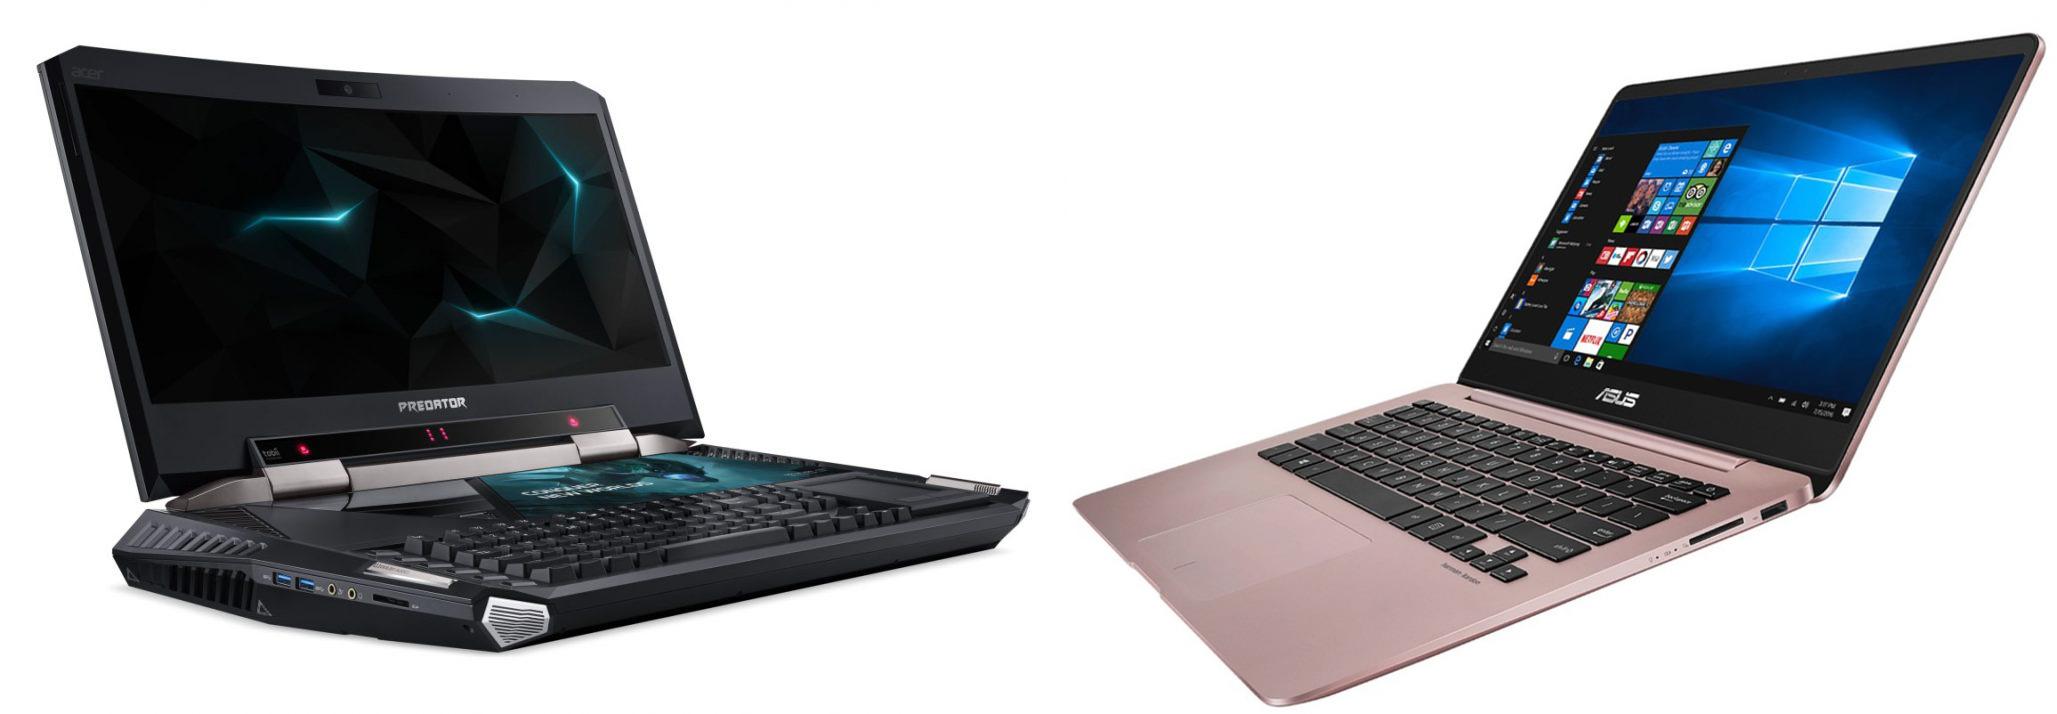 Два основных типа ноутбуков